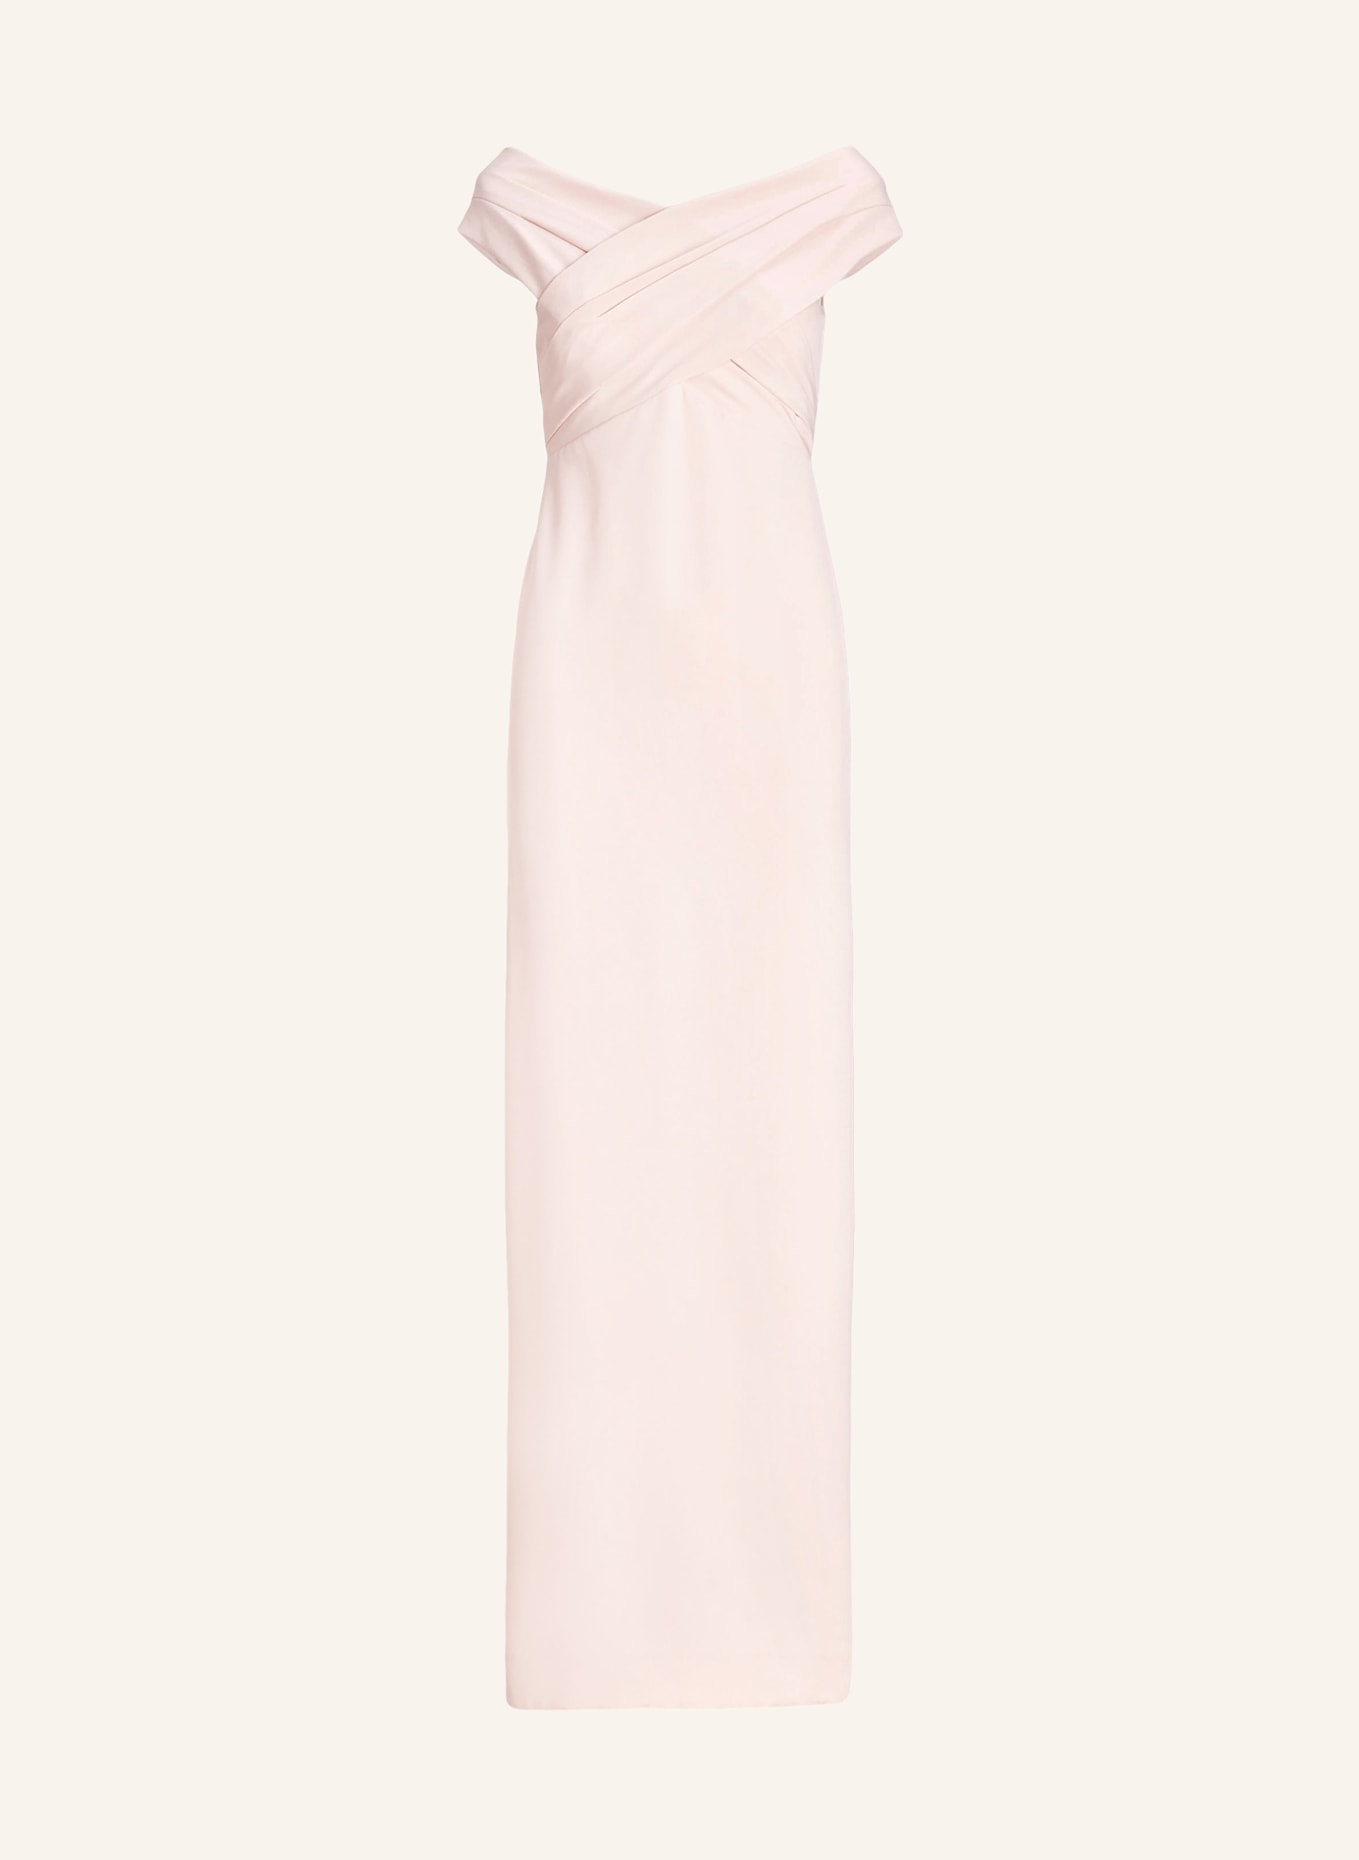 LAUREN RALPH LAUREN Evening dress IRENE, Color: LIGHT PINK (Image 1)